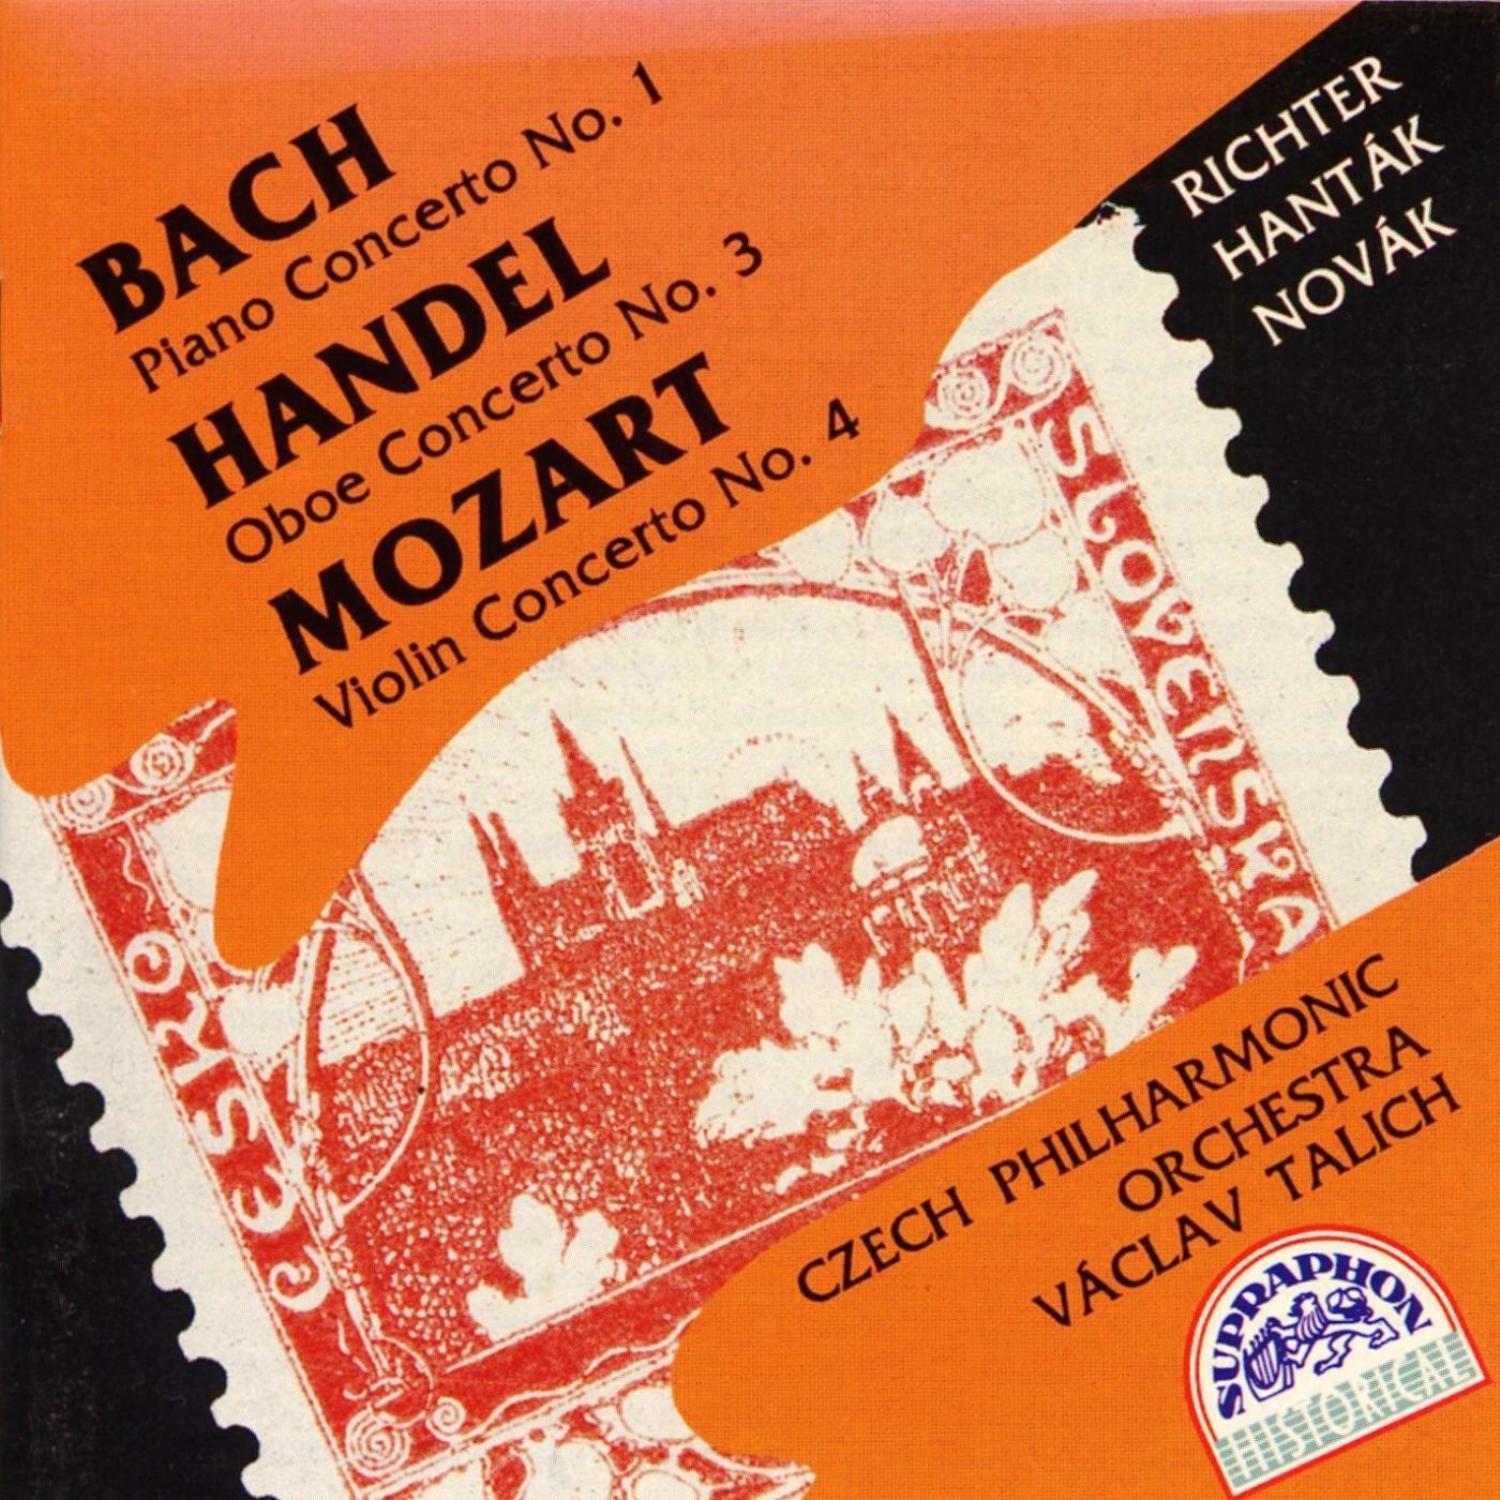 Bach, H ndel, Mozart: Piano Concerto No. 1  Oboe Concerto No. 3  Violin Concerto No. 4